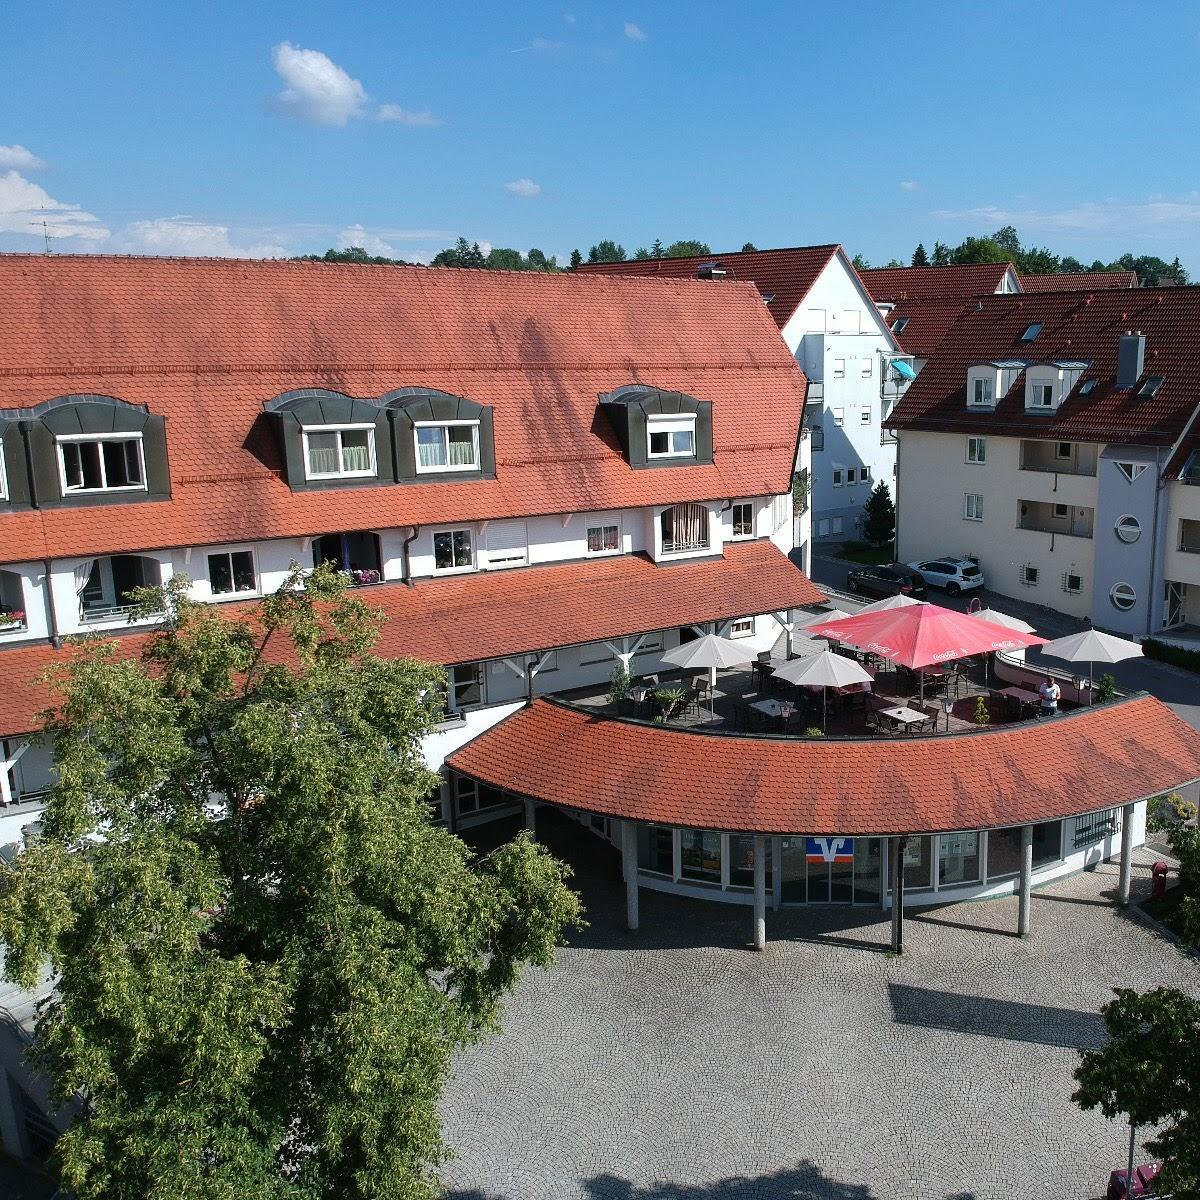 Restaurant "Bistro am Dorfplatz" in  Baindt